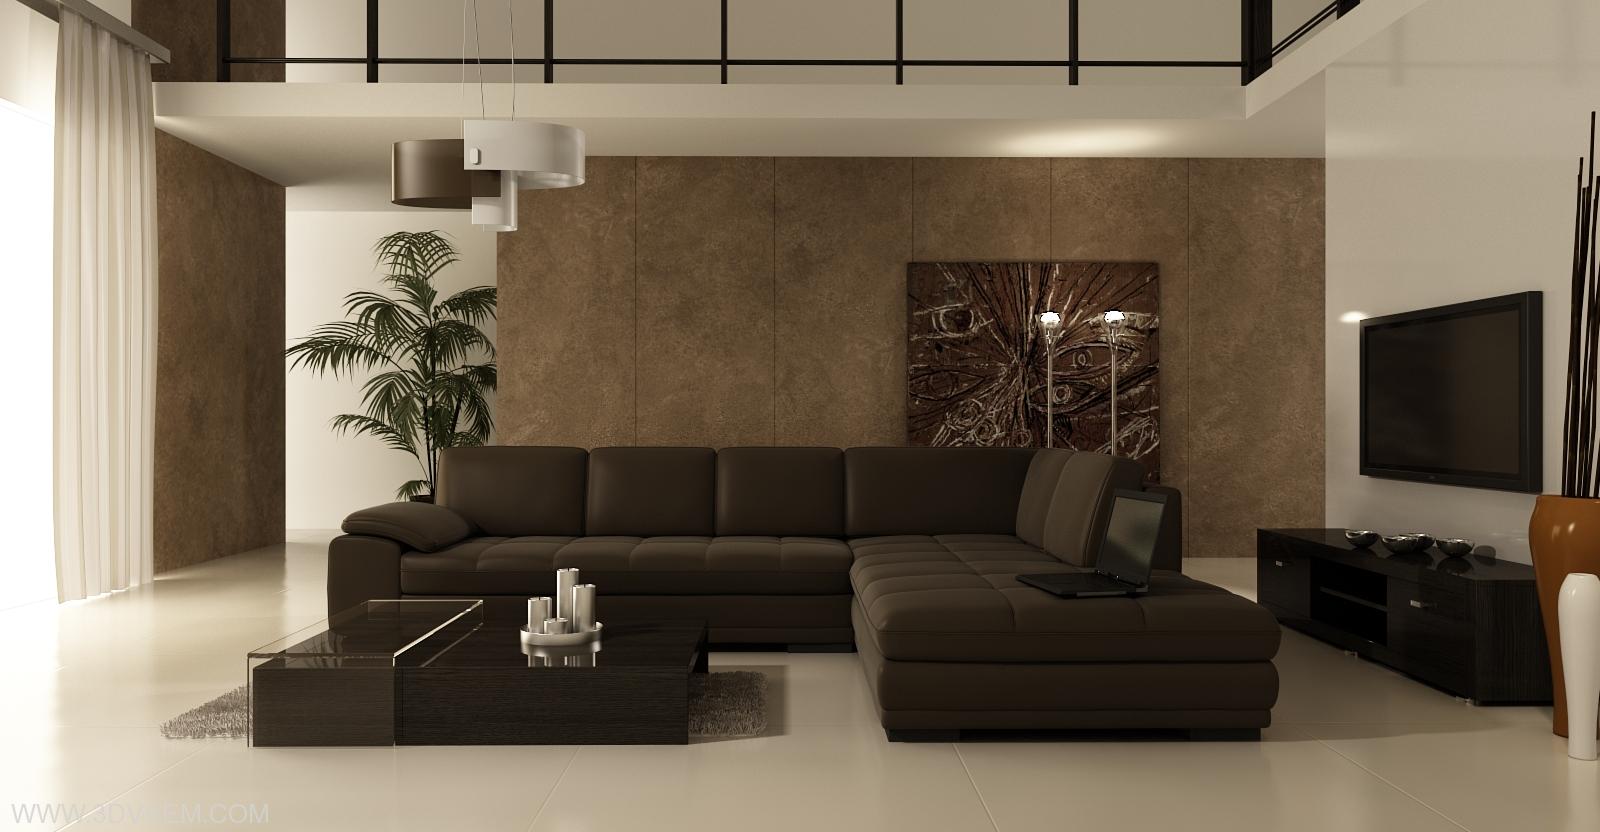 Интерьер гостиной в стиле минимализм в бежево - коричневых тонах